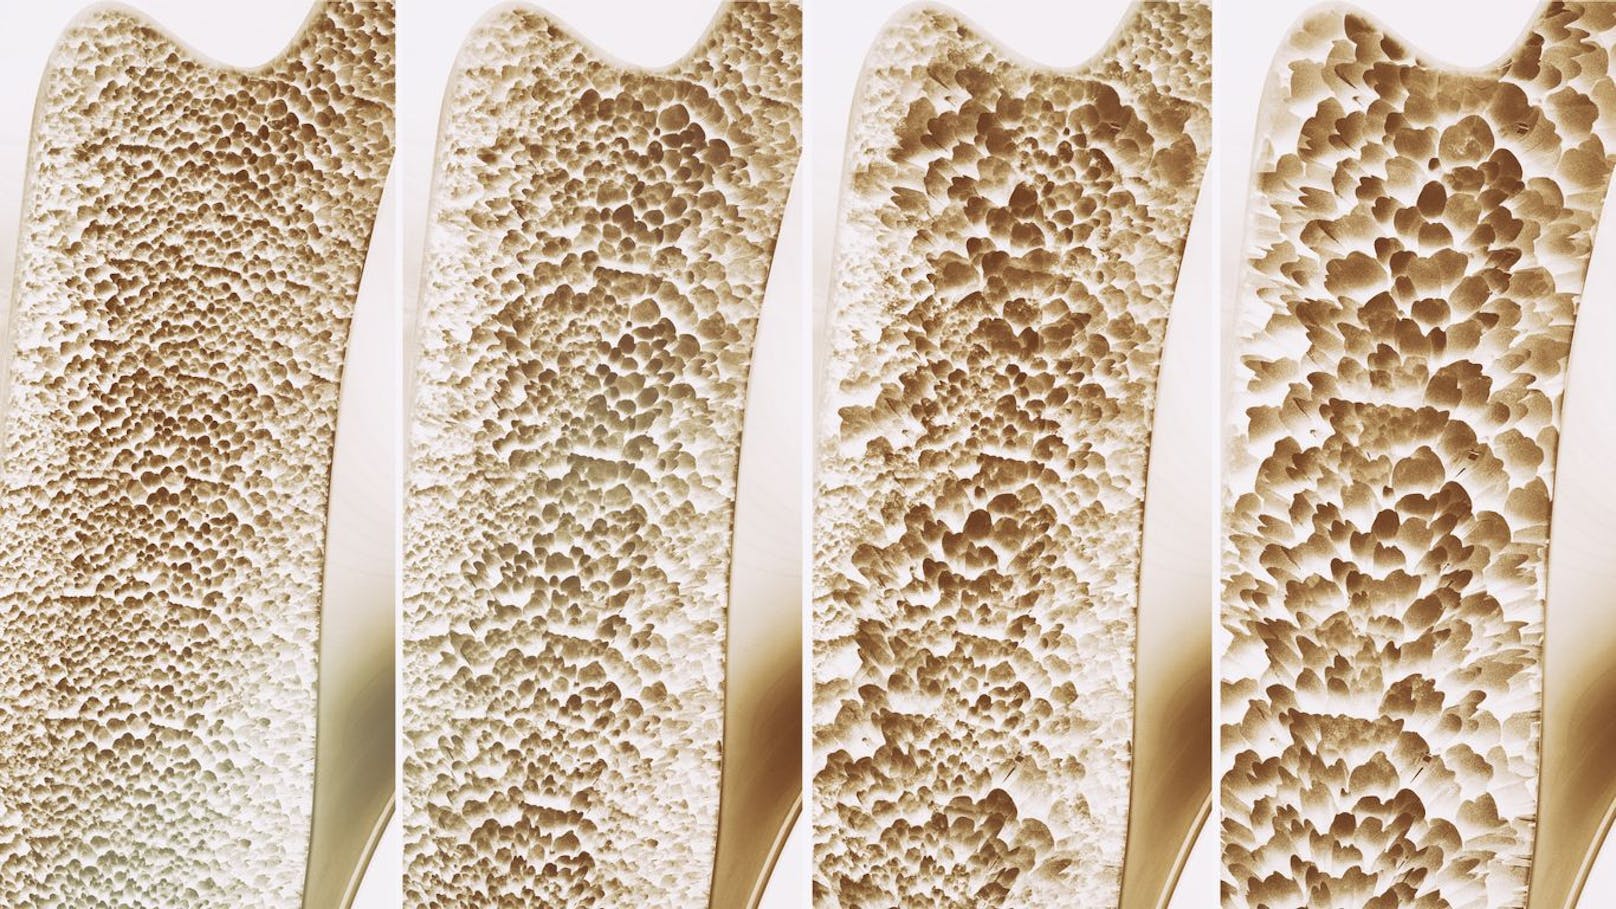 Bei Osteoporose verliert der Knochen an Masse und Festigkeit. Dadurch bricht er leichter.